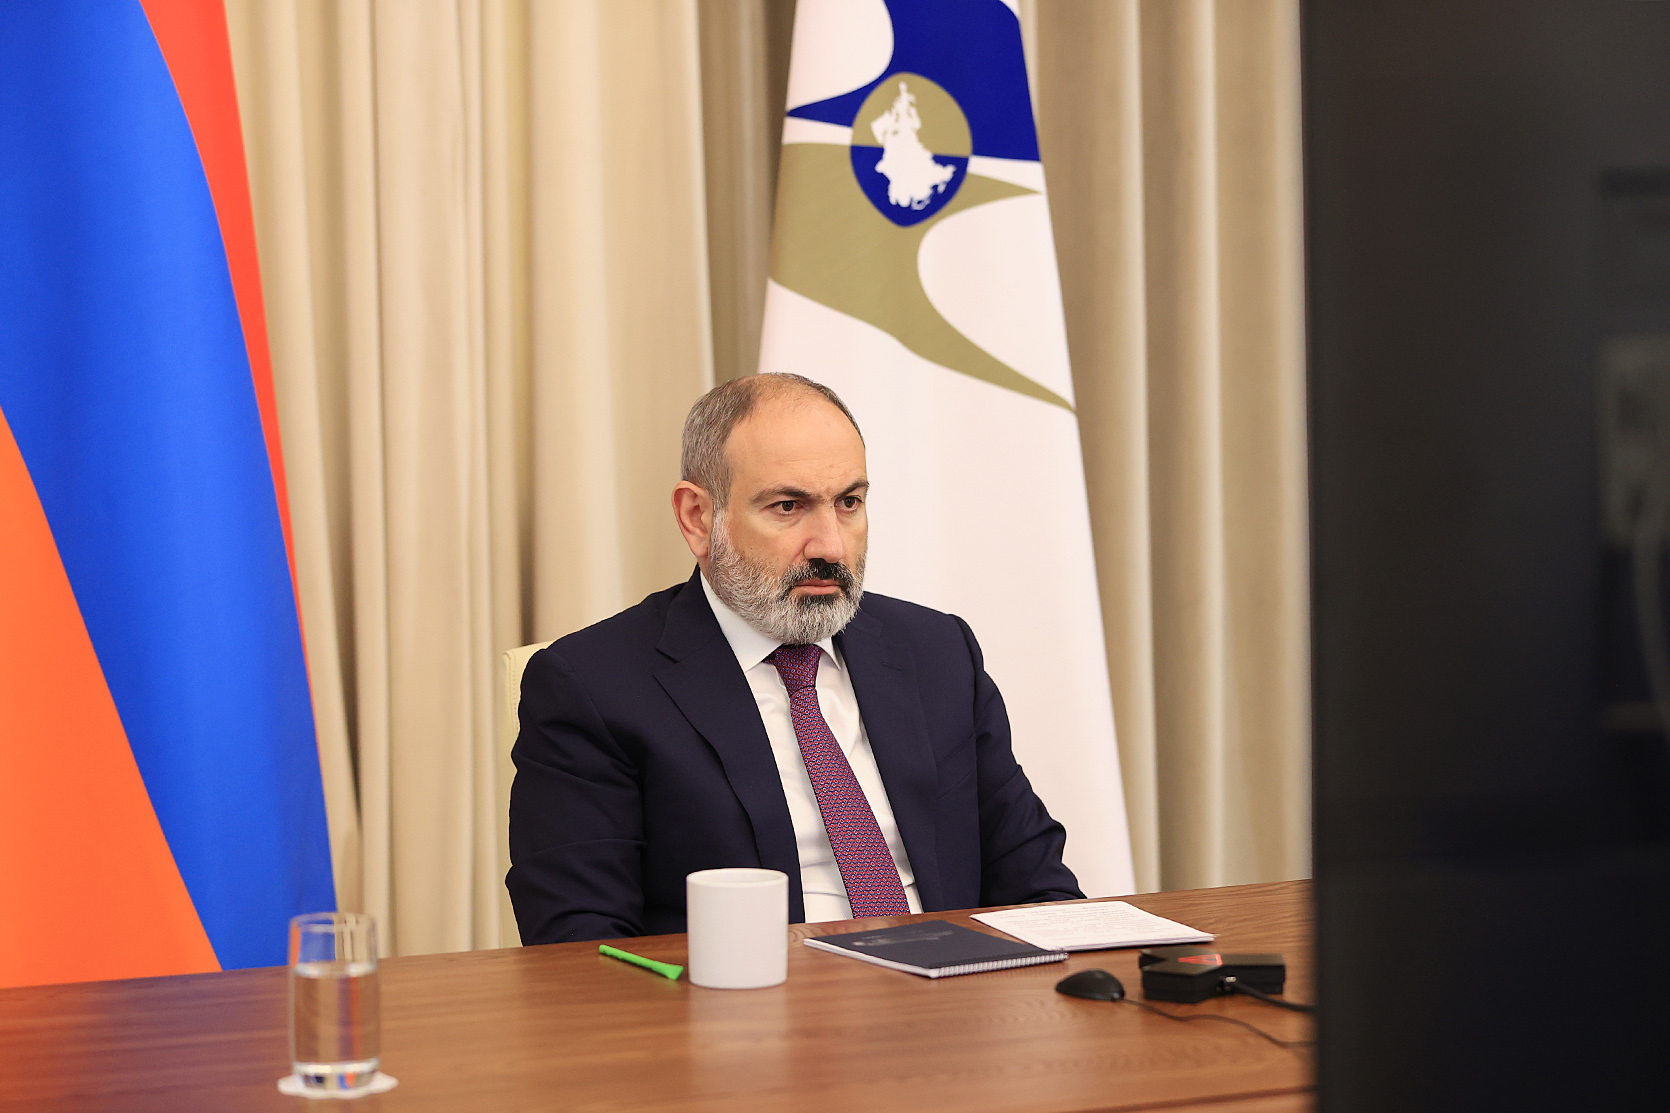 Տեխնոլոգիաները տնտեսության մեջ բեկում մտցնելու հնարավորություն են և այդ ոլորտը ռազմավարական նշանակություն ունի Հայաստանի համար. վարչապետ